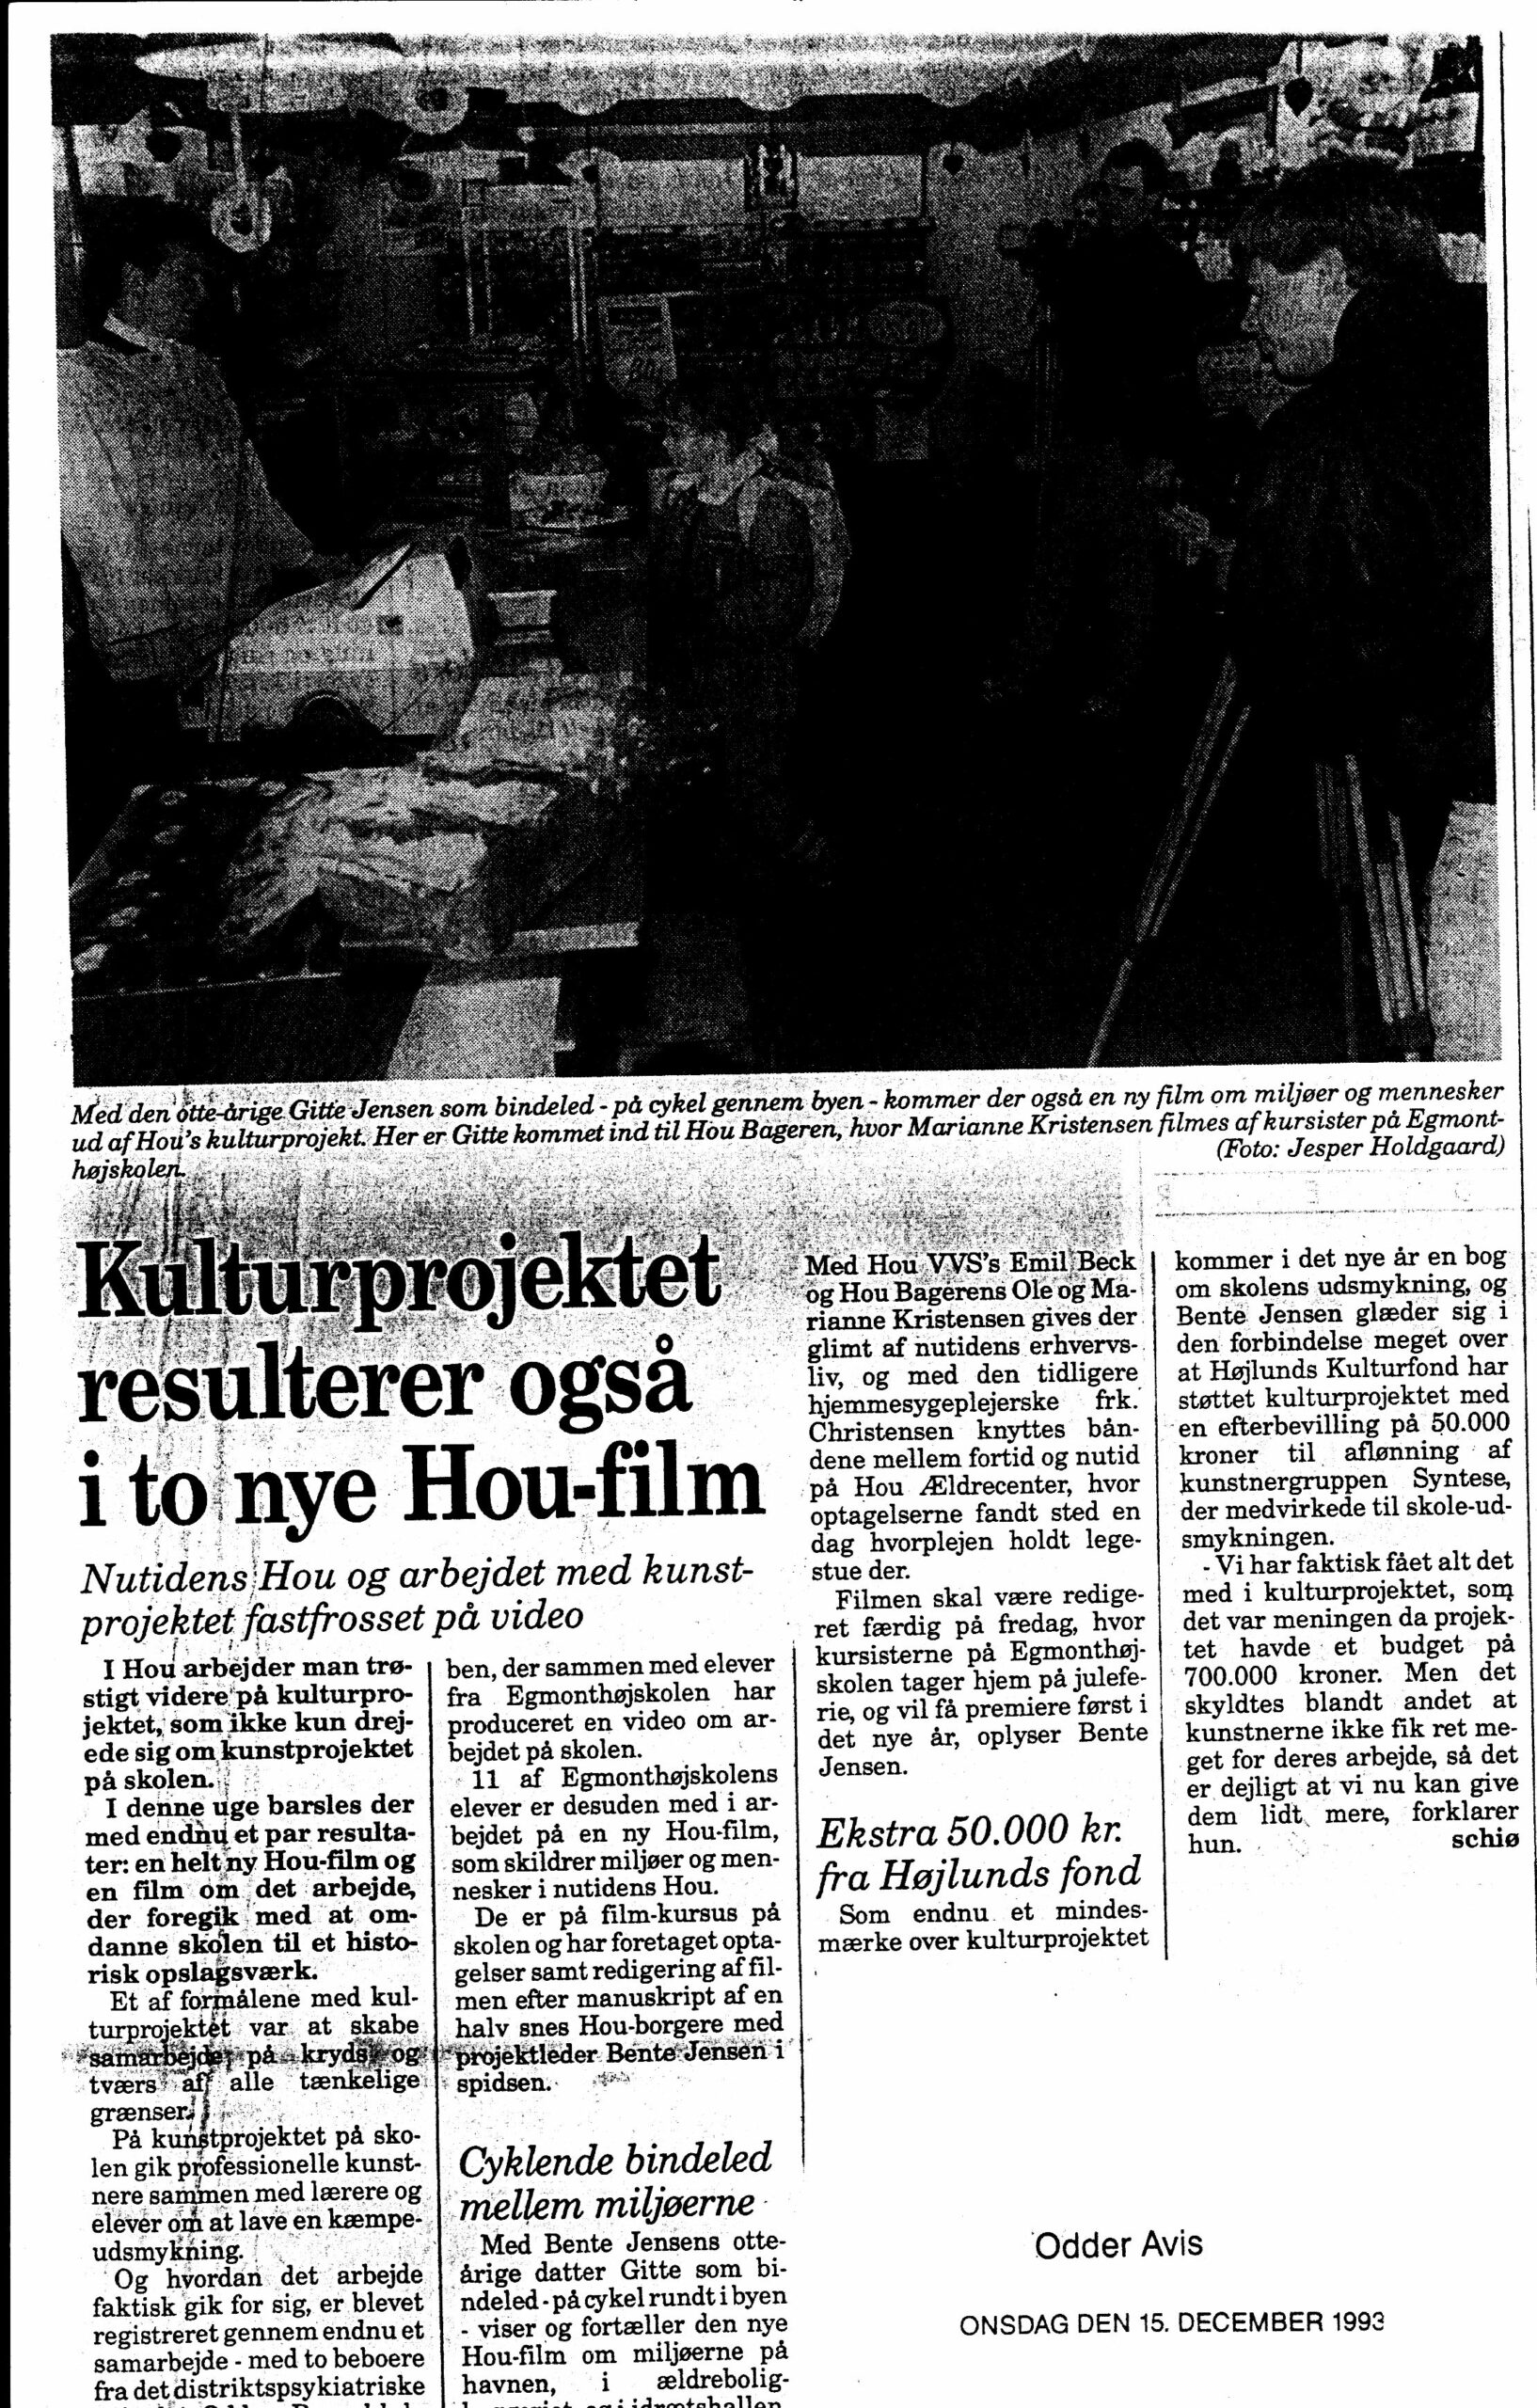 Kulturprojektet resulterer også i to nye Hou-film. Omtale (Herfra min verden går, Hou Skole). schiø. Odder Avis.